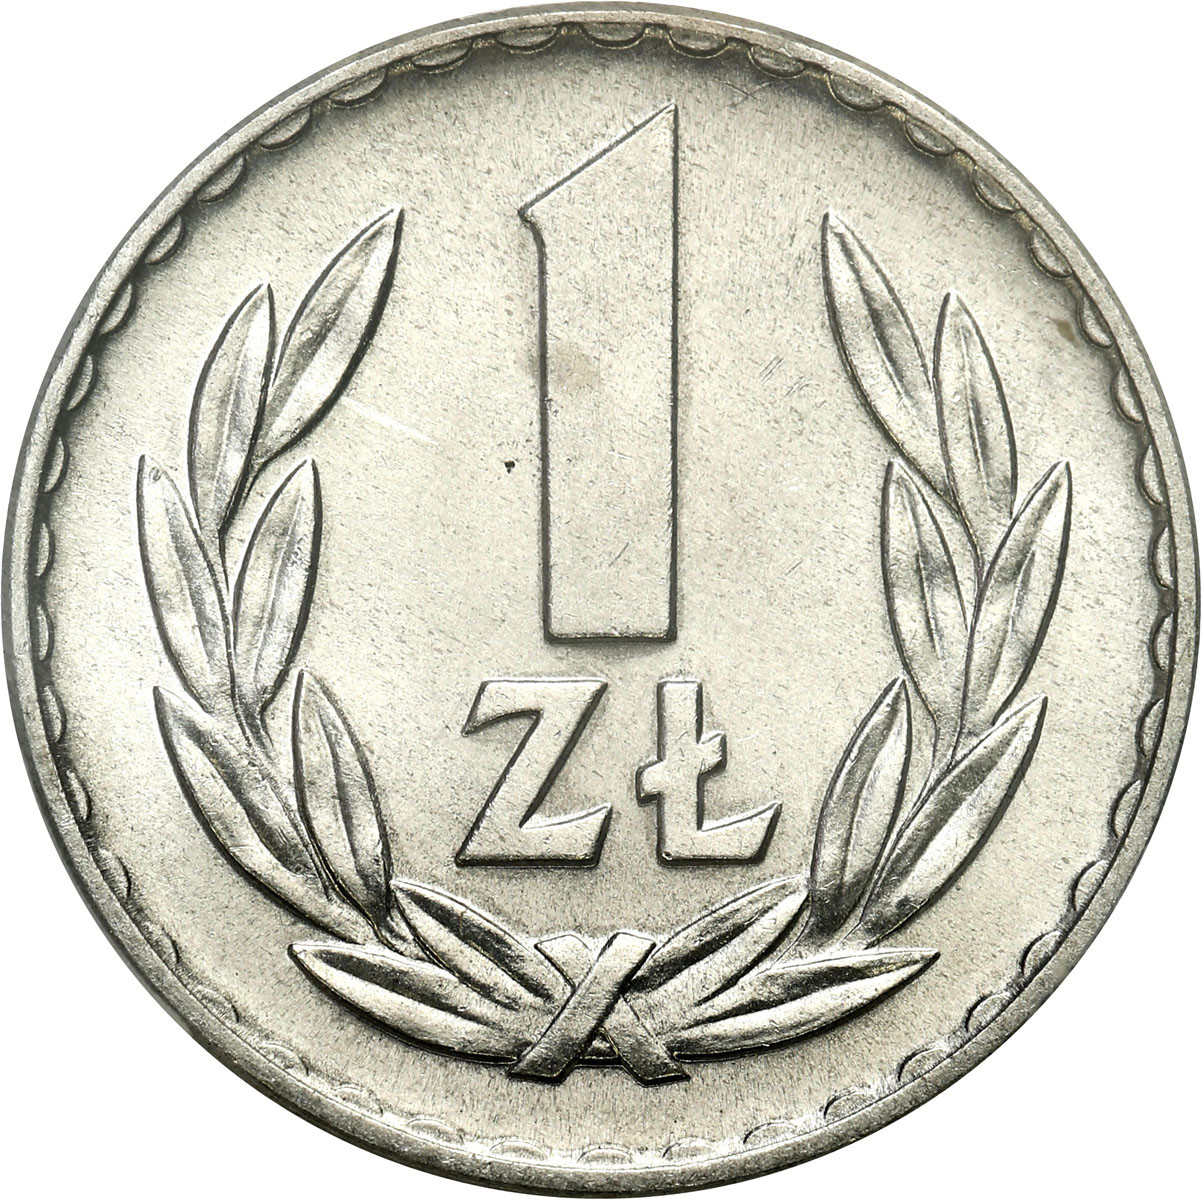 PRL. 1 złoty 1967 aluminium - RZADKI ROCZNIK, PCGS MS67 (MAX)